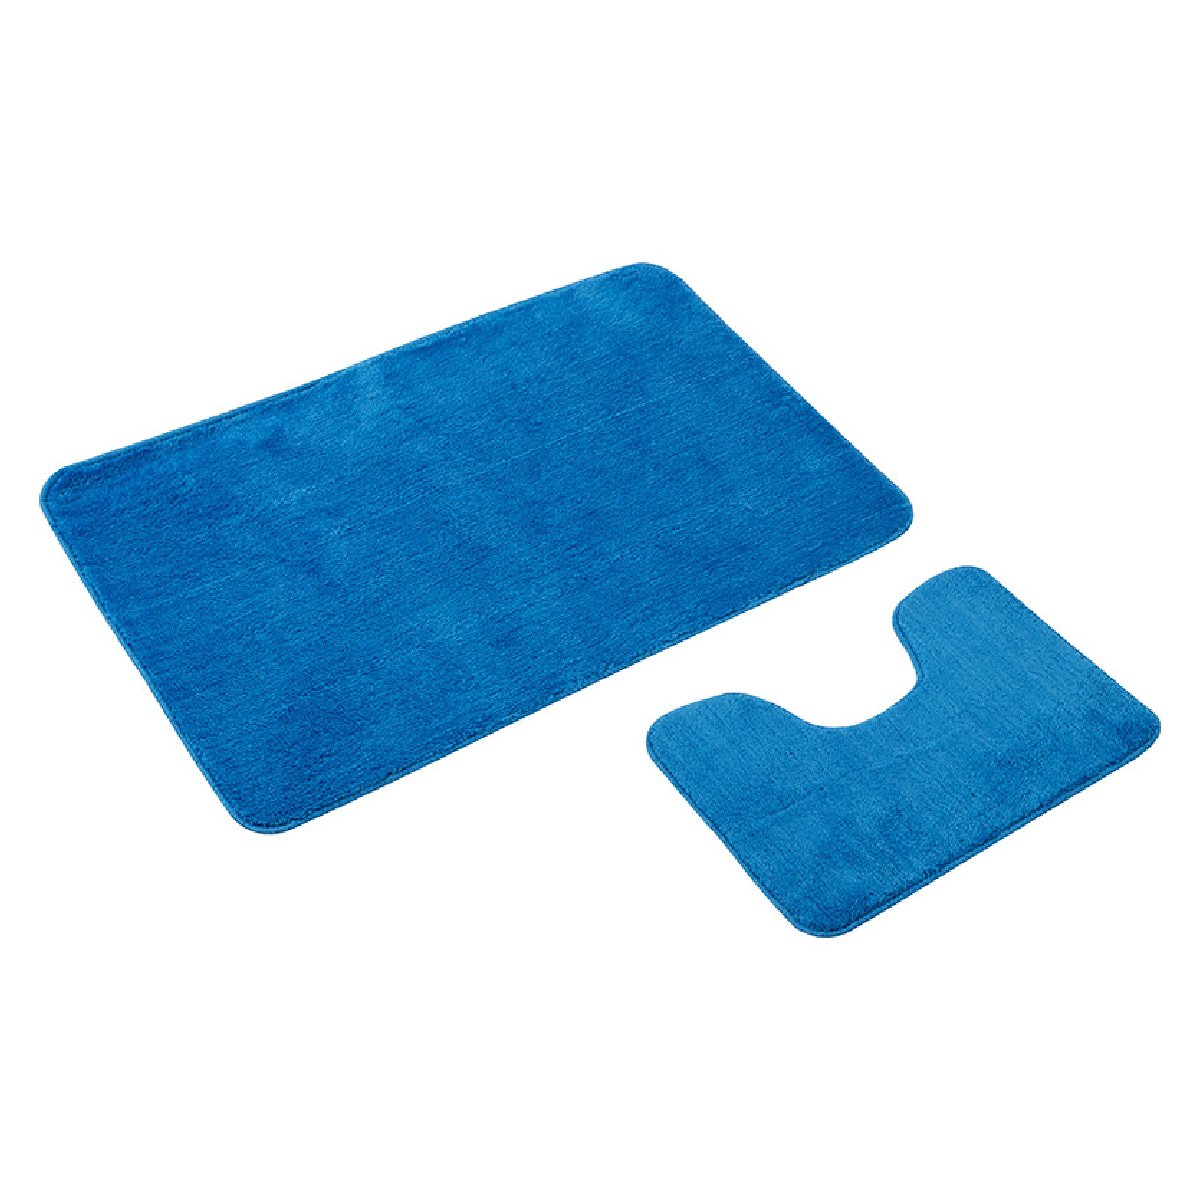 Набор ковриков для ванной и туалета Duet 2 шт, цвет-голубой (102513)Купить